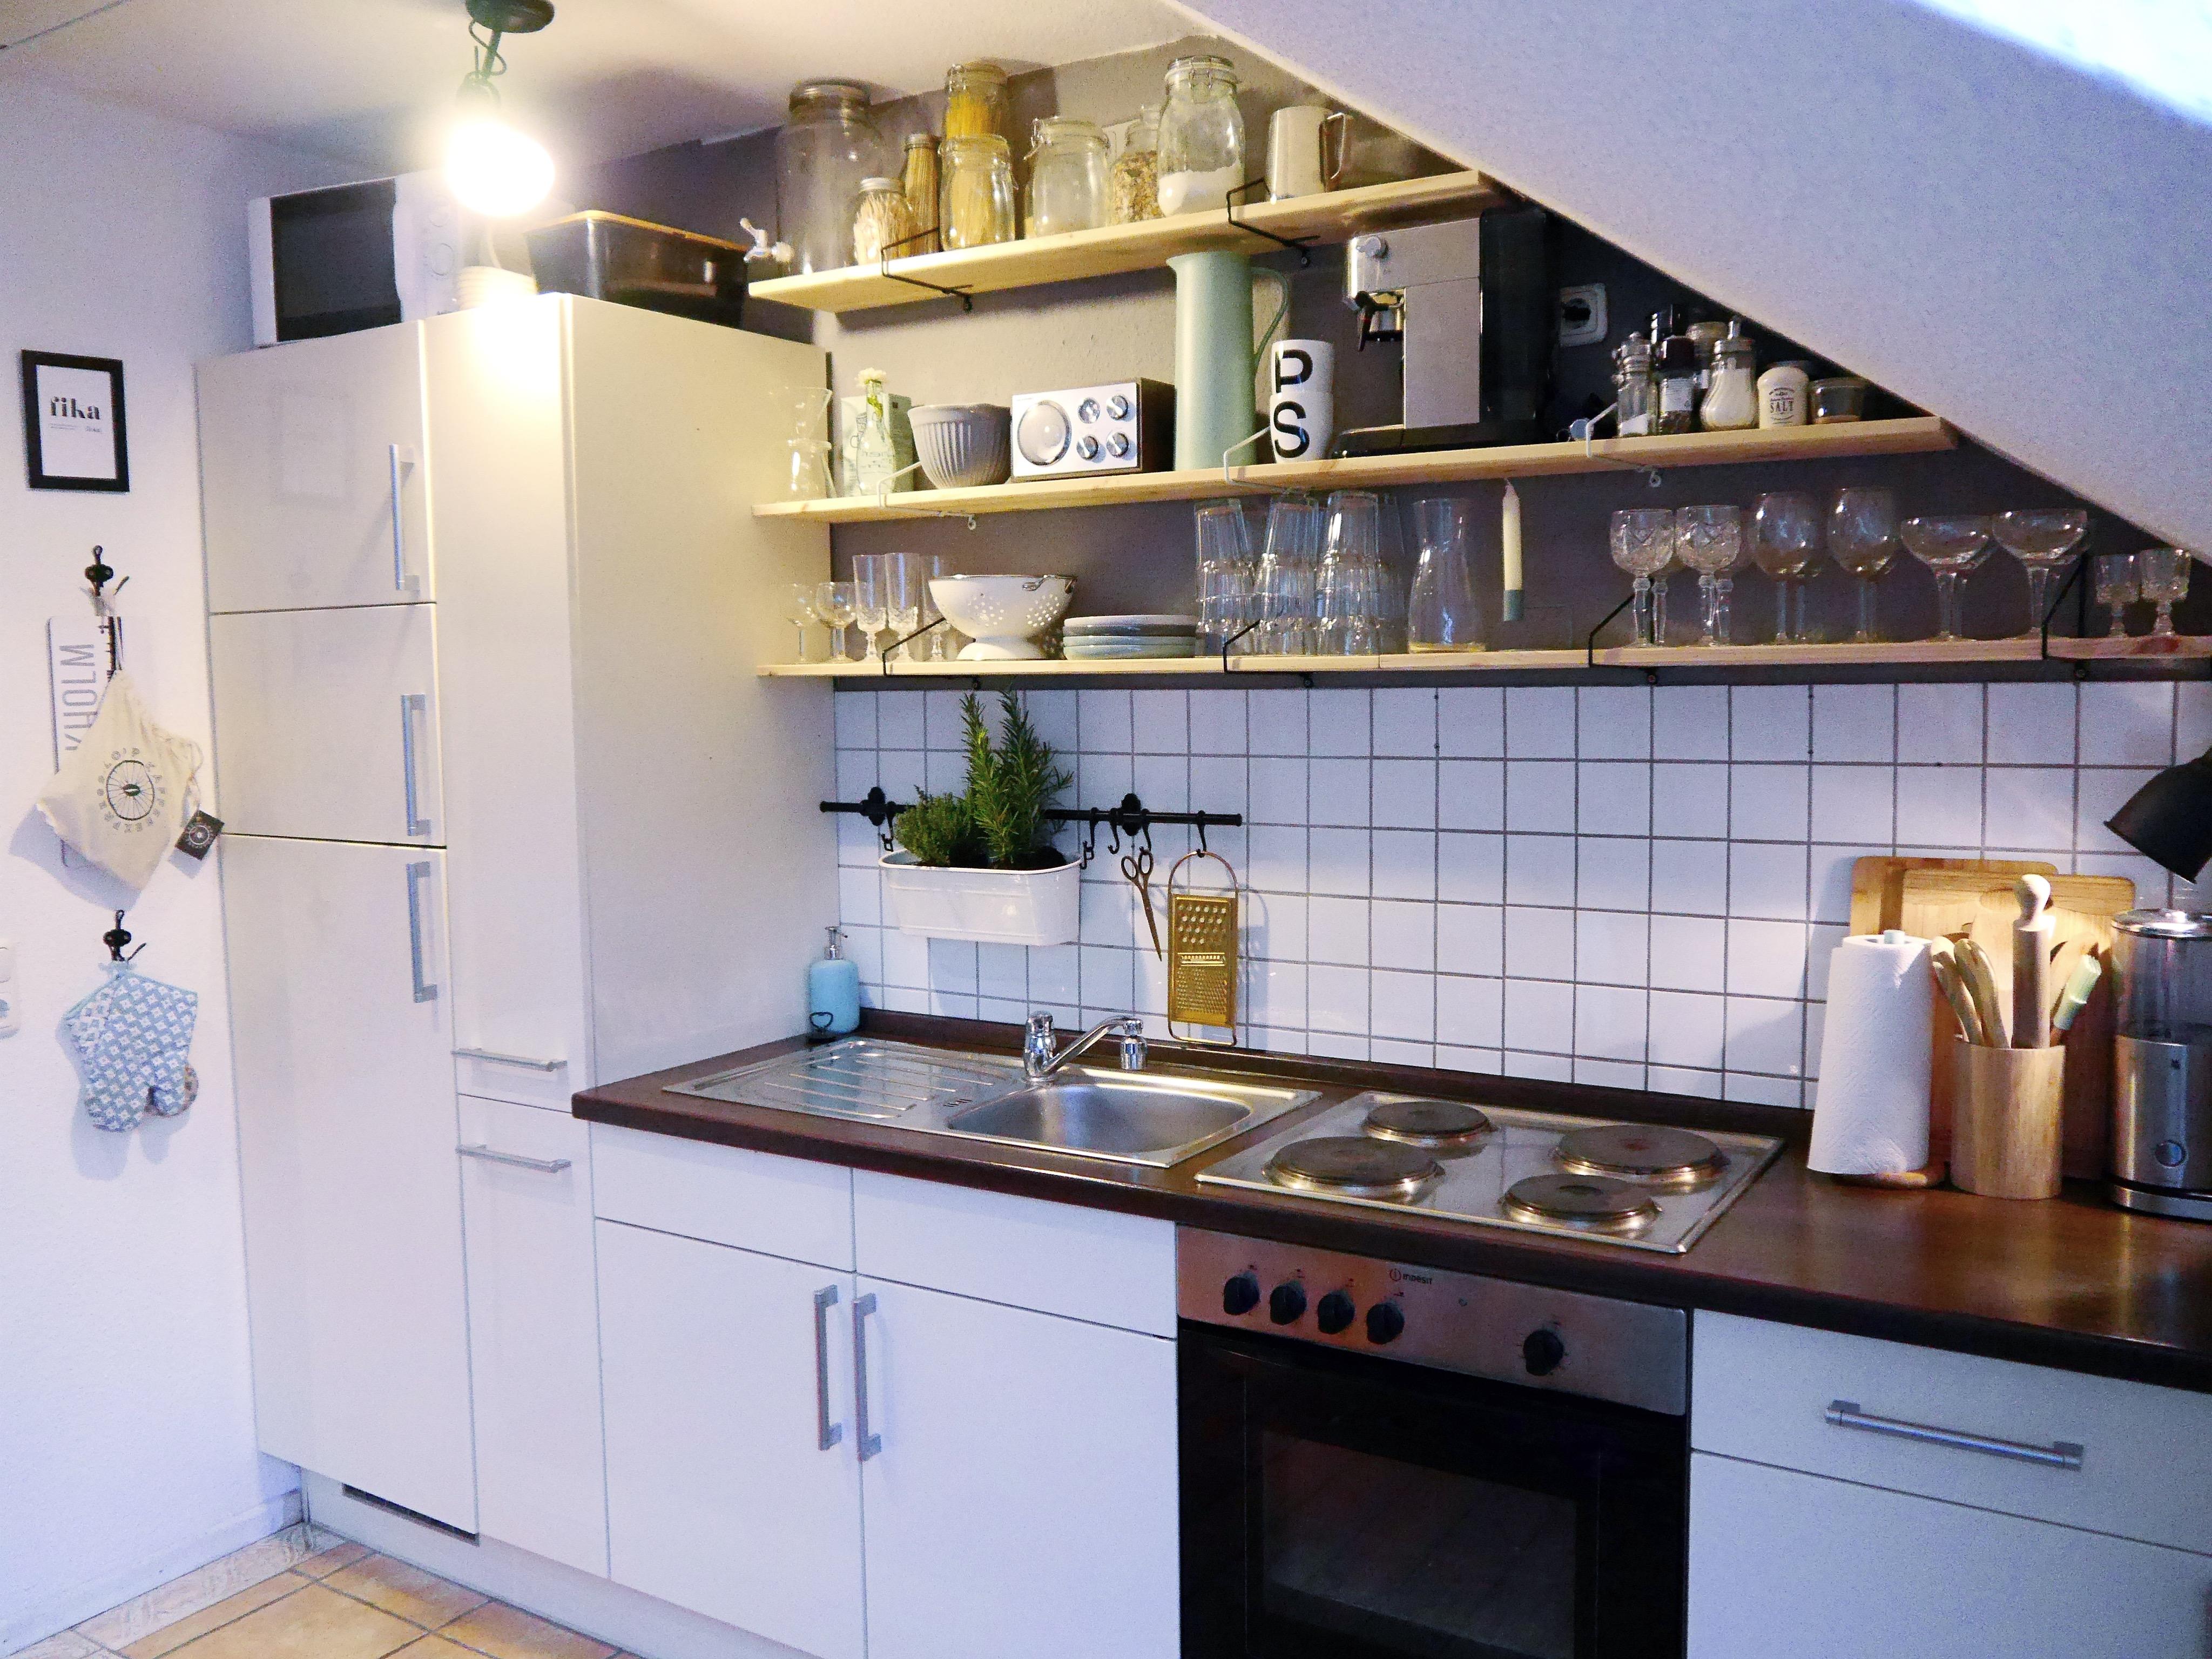 Geliebte neu umgebaute Küche mit viel mehr #platz ♥️ #skandistyle #kitchen